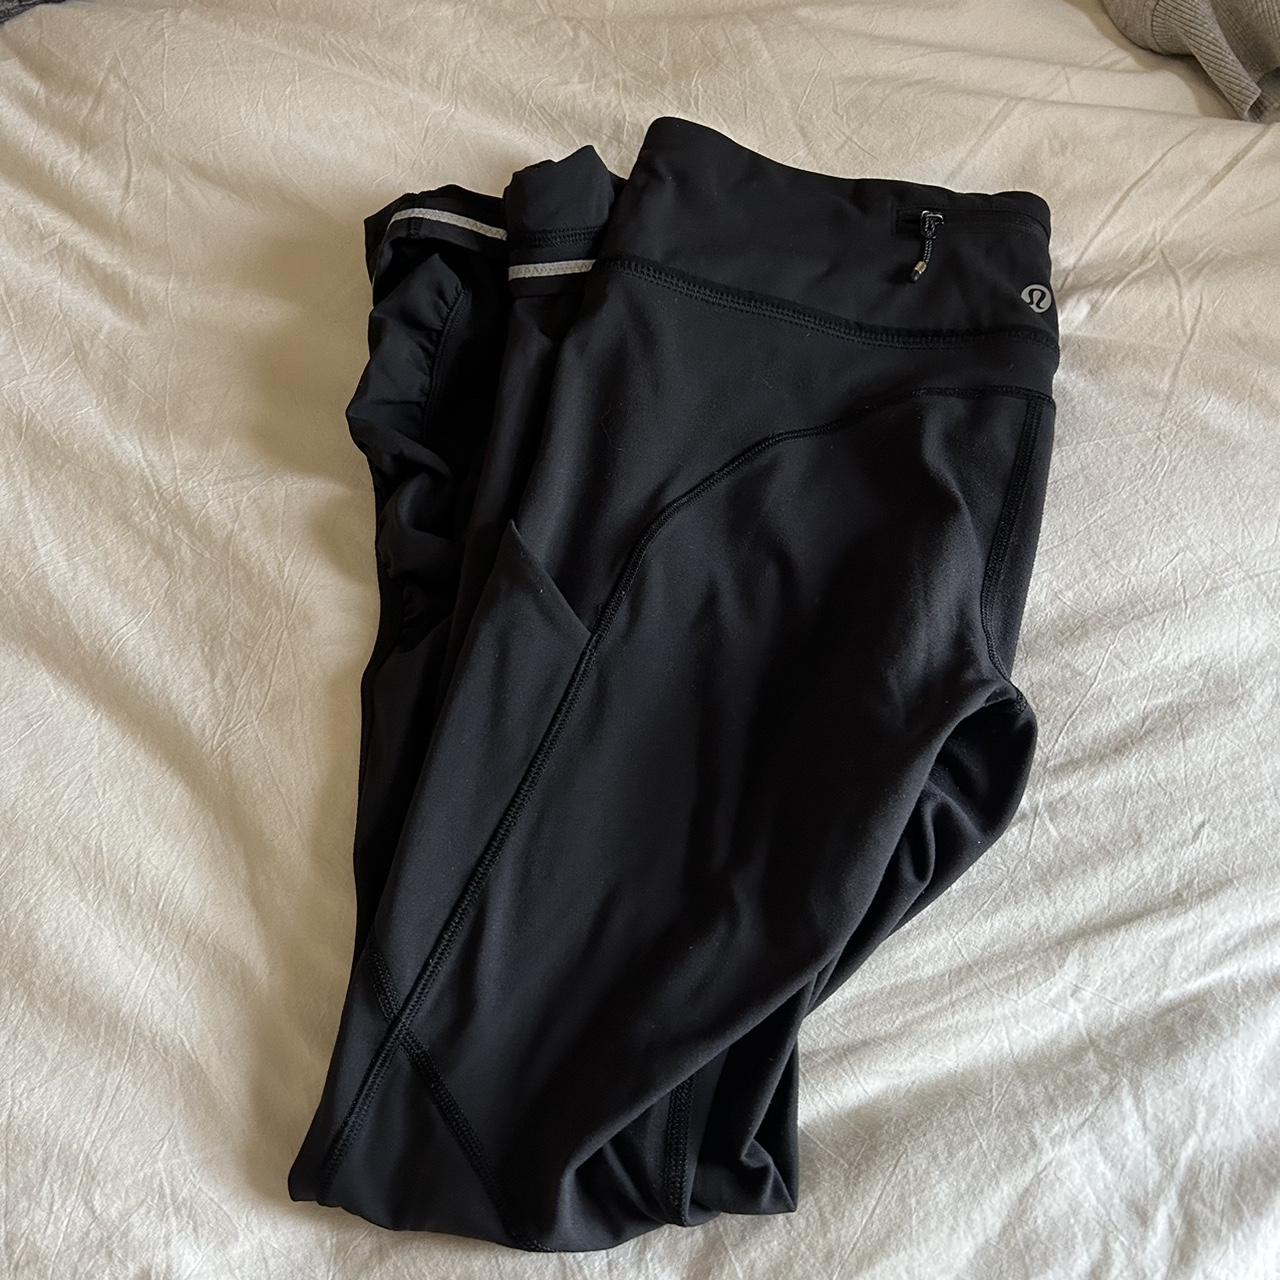 Lulu lemon black leggings. Size 6. In great - Depop